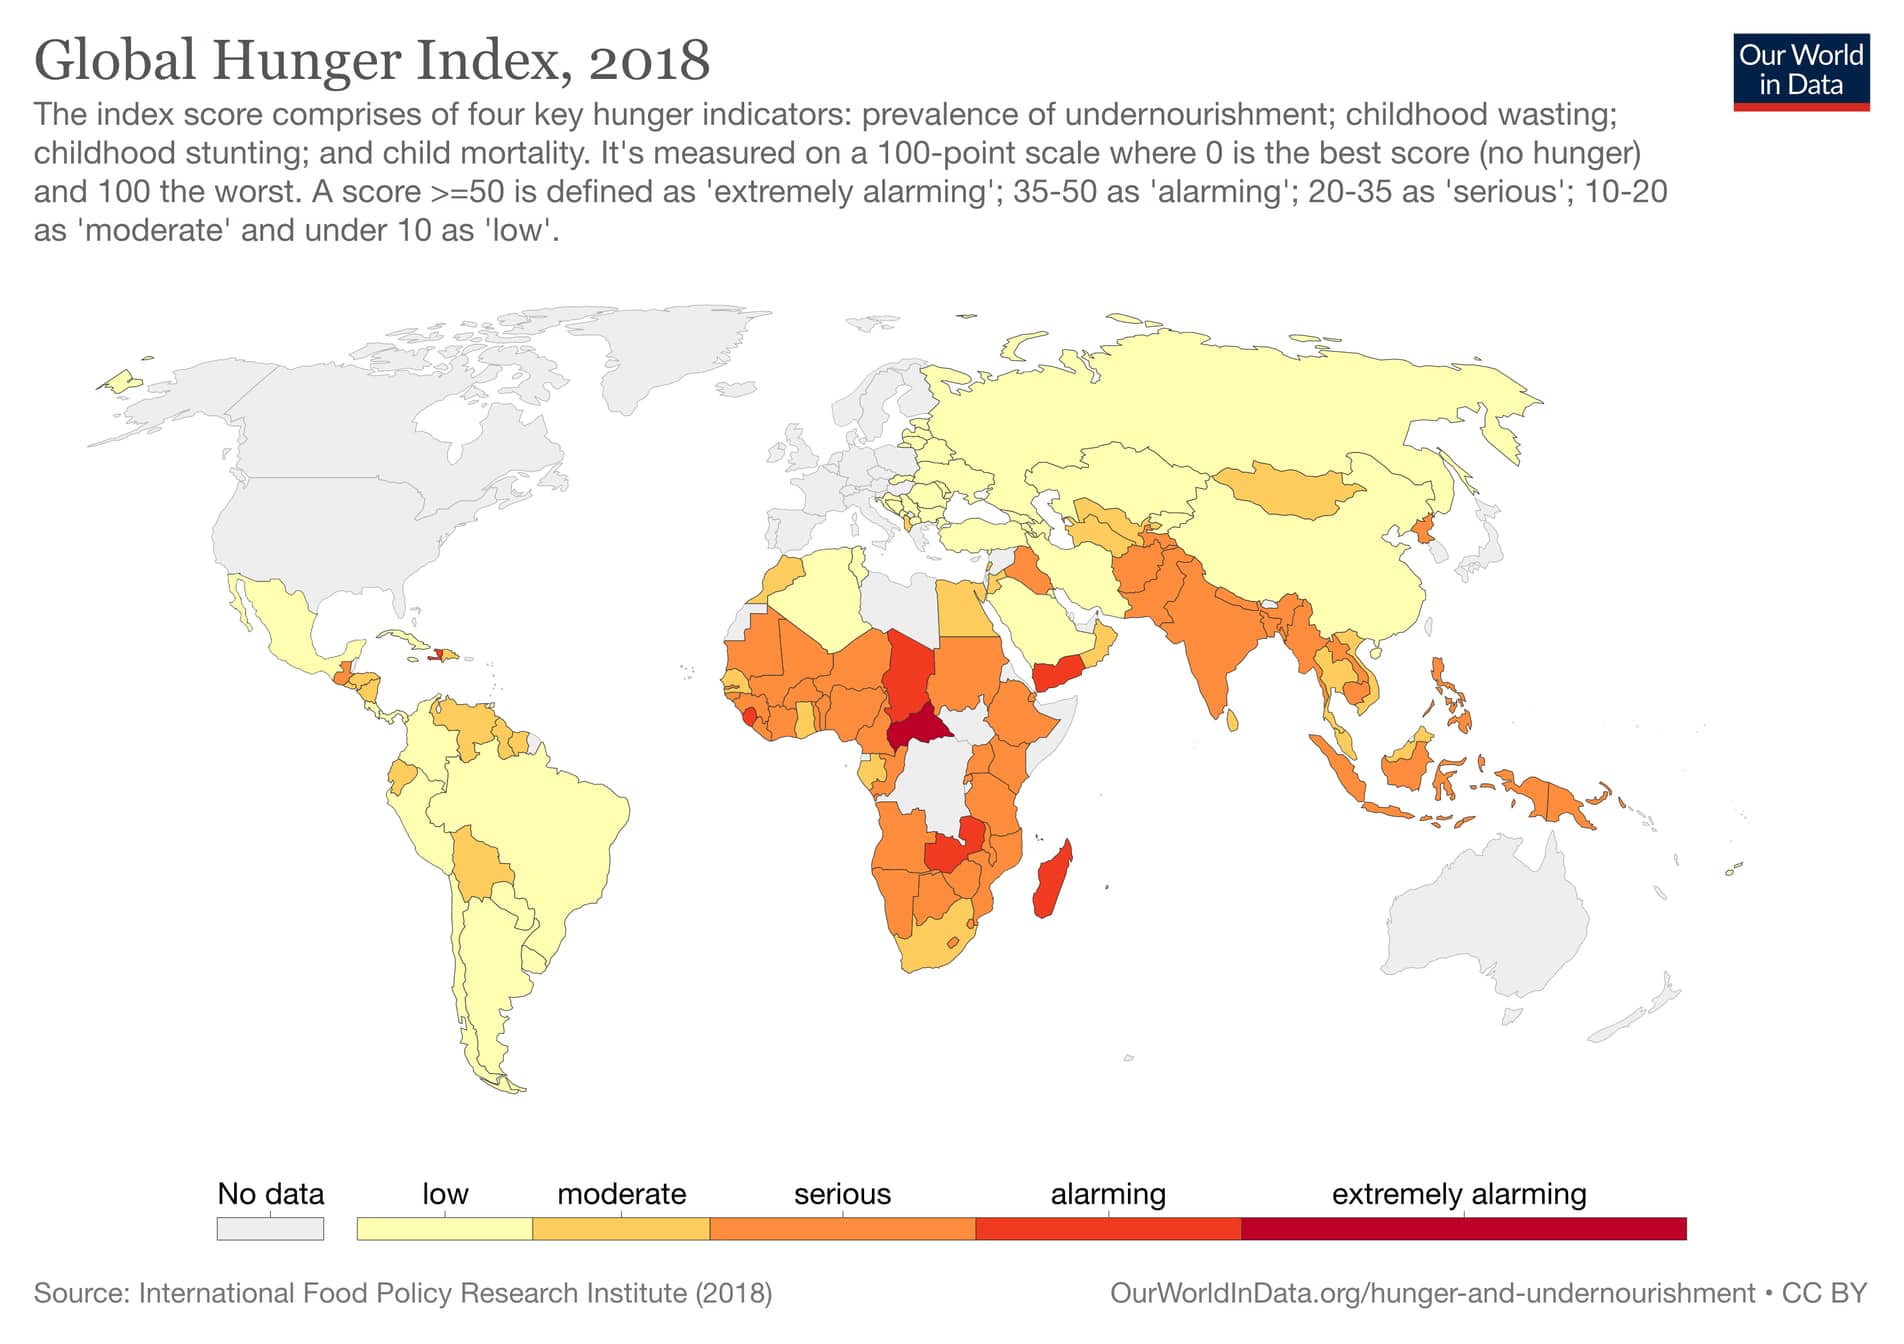 Photo: Global Hunger Index, 2018 (OurWorldInData)